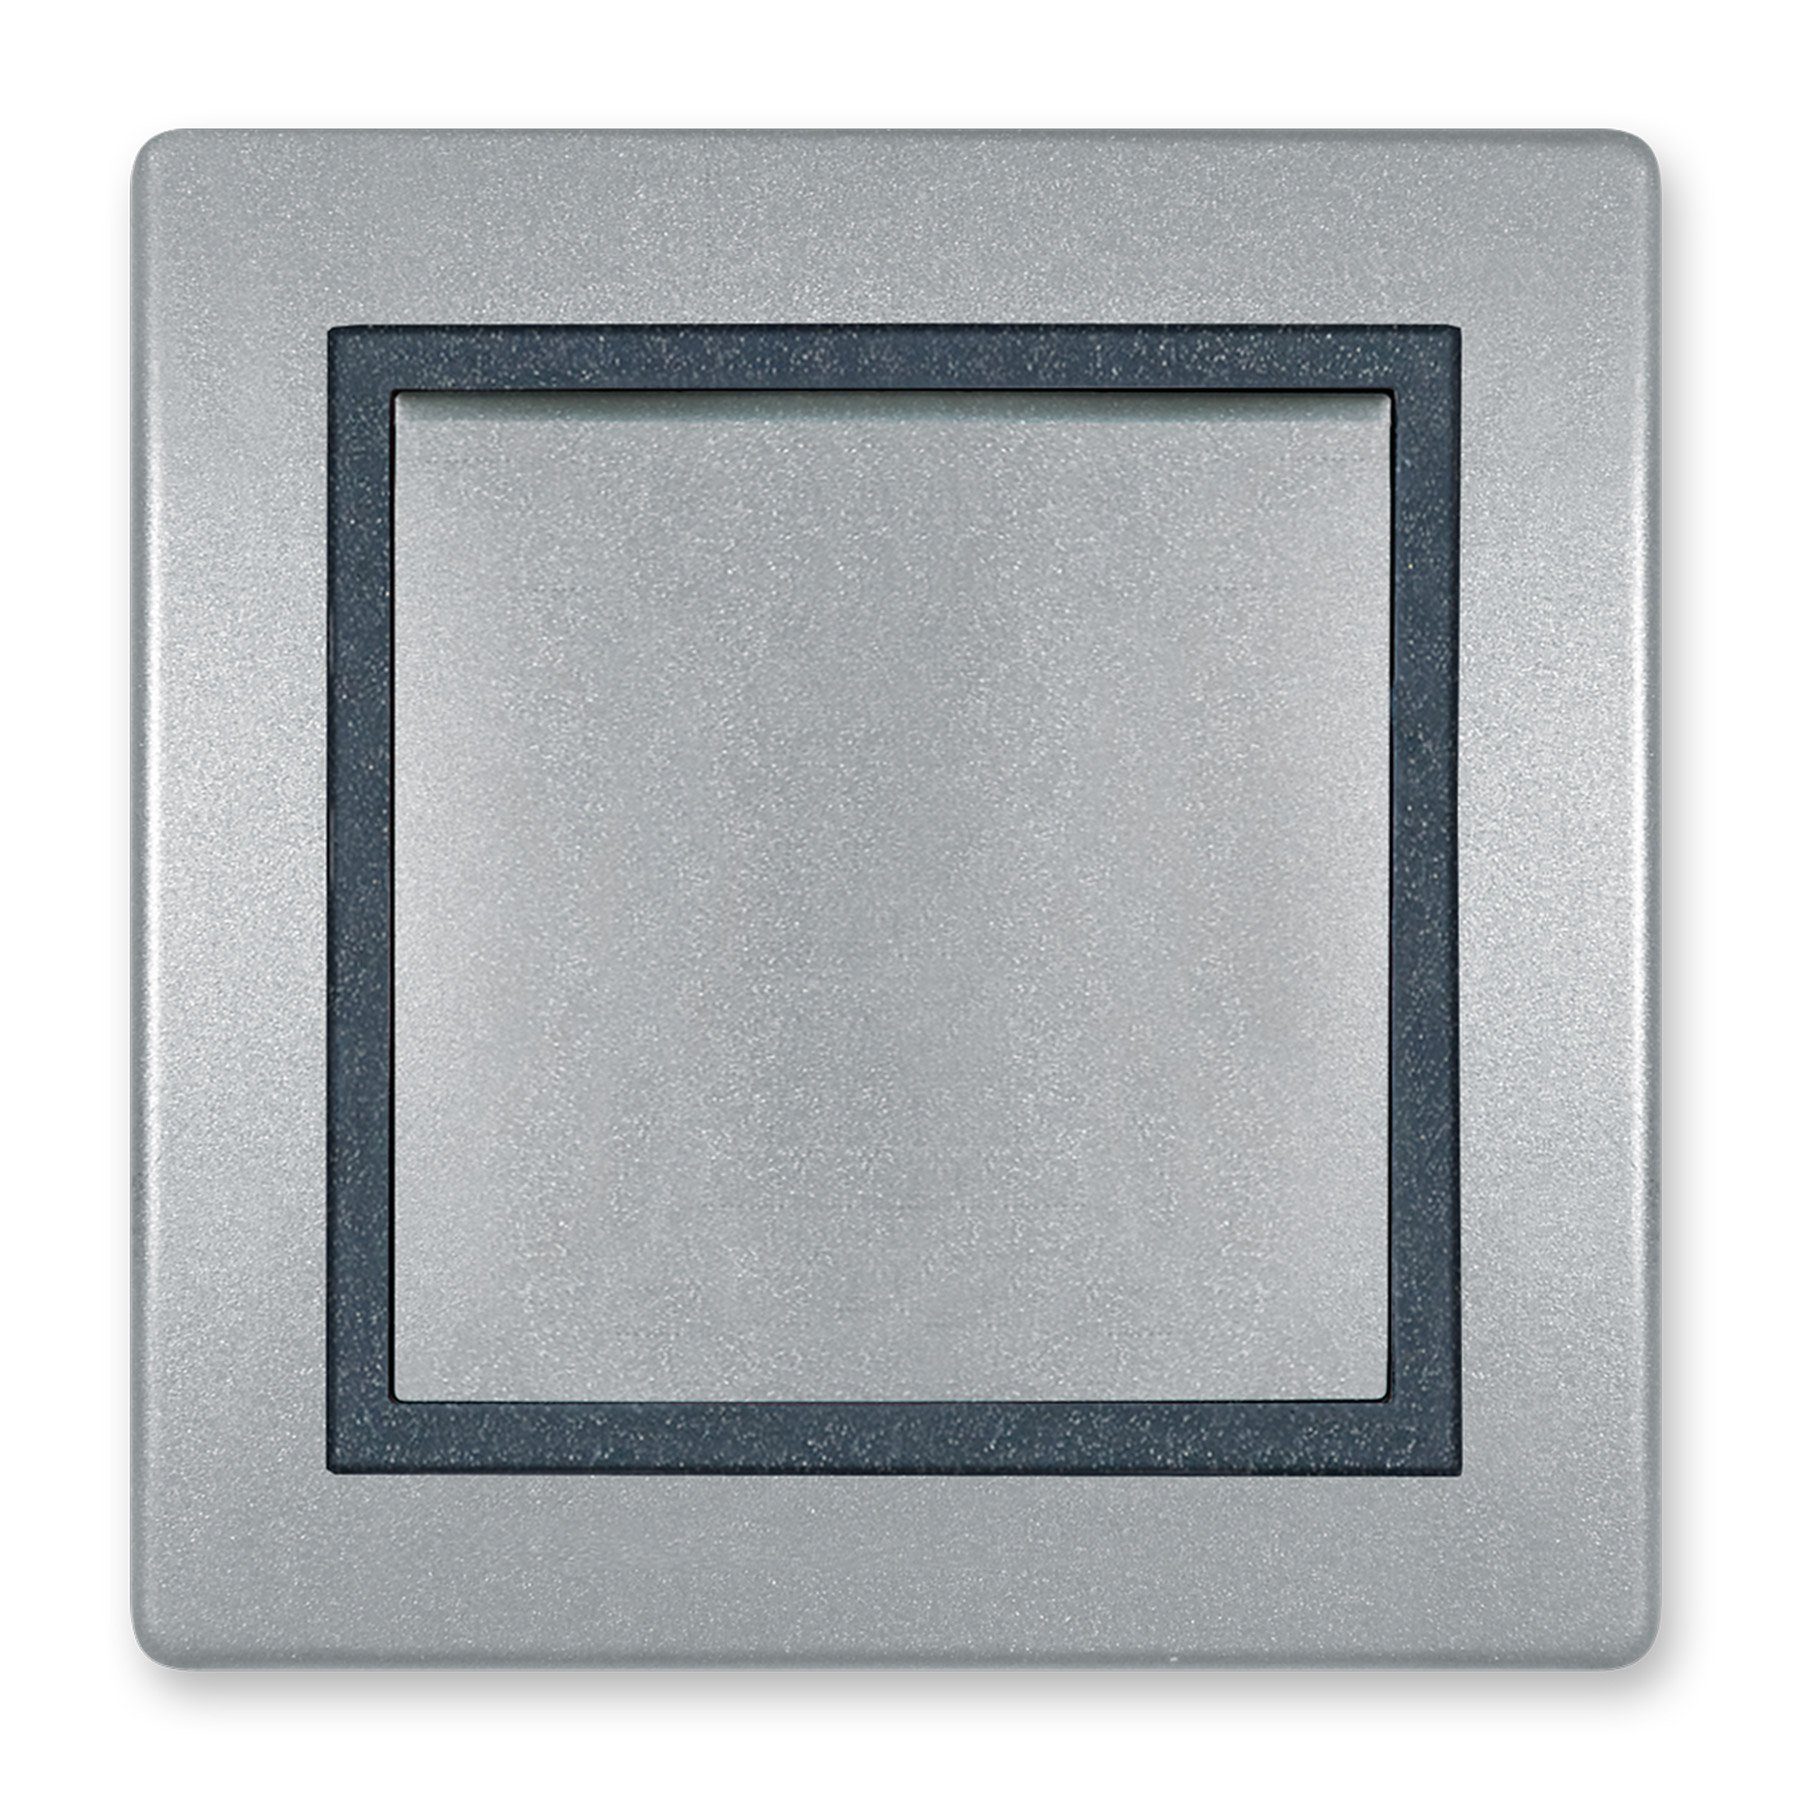 Aling Conel Lichtschalter Prestige Line Ein/Aus Schalter Silber (Packung), VDE-zertifiziert